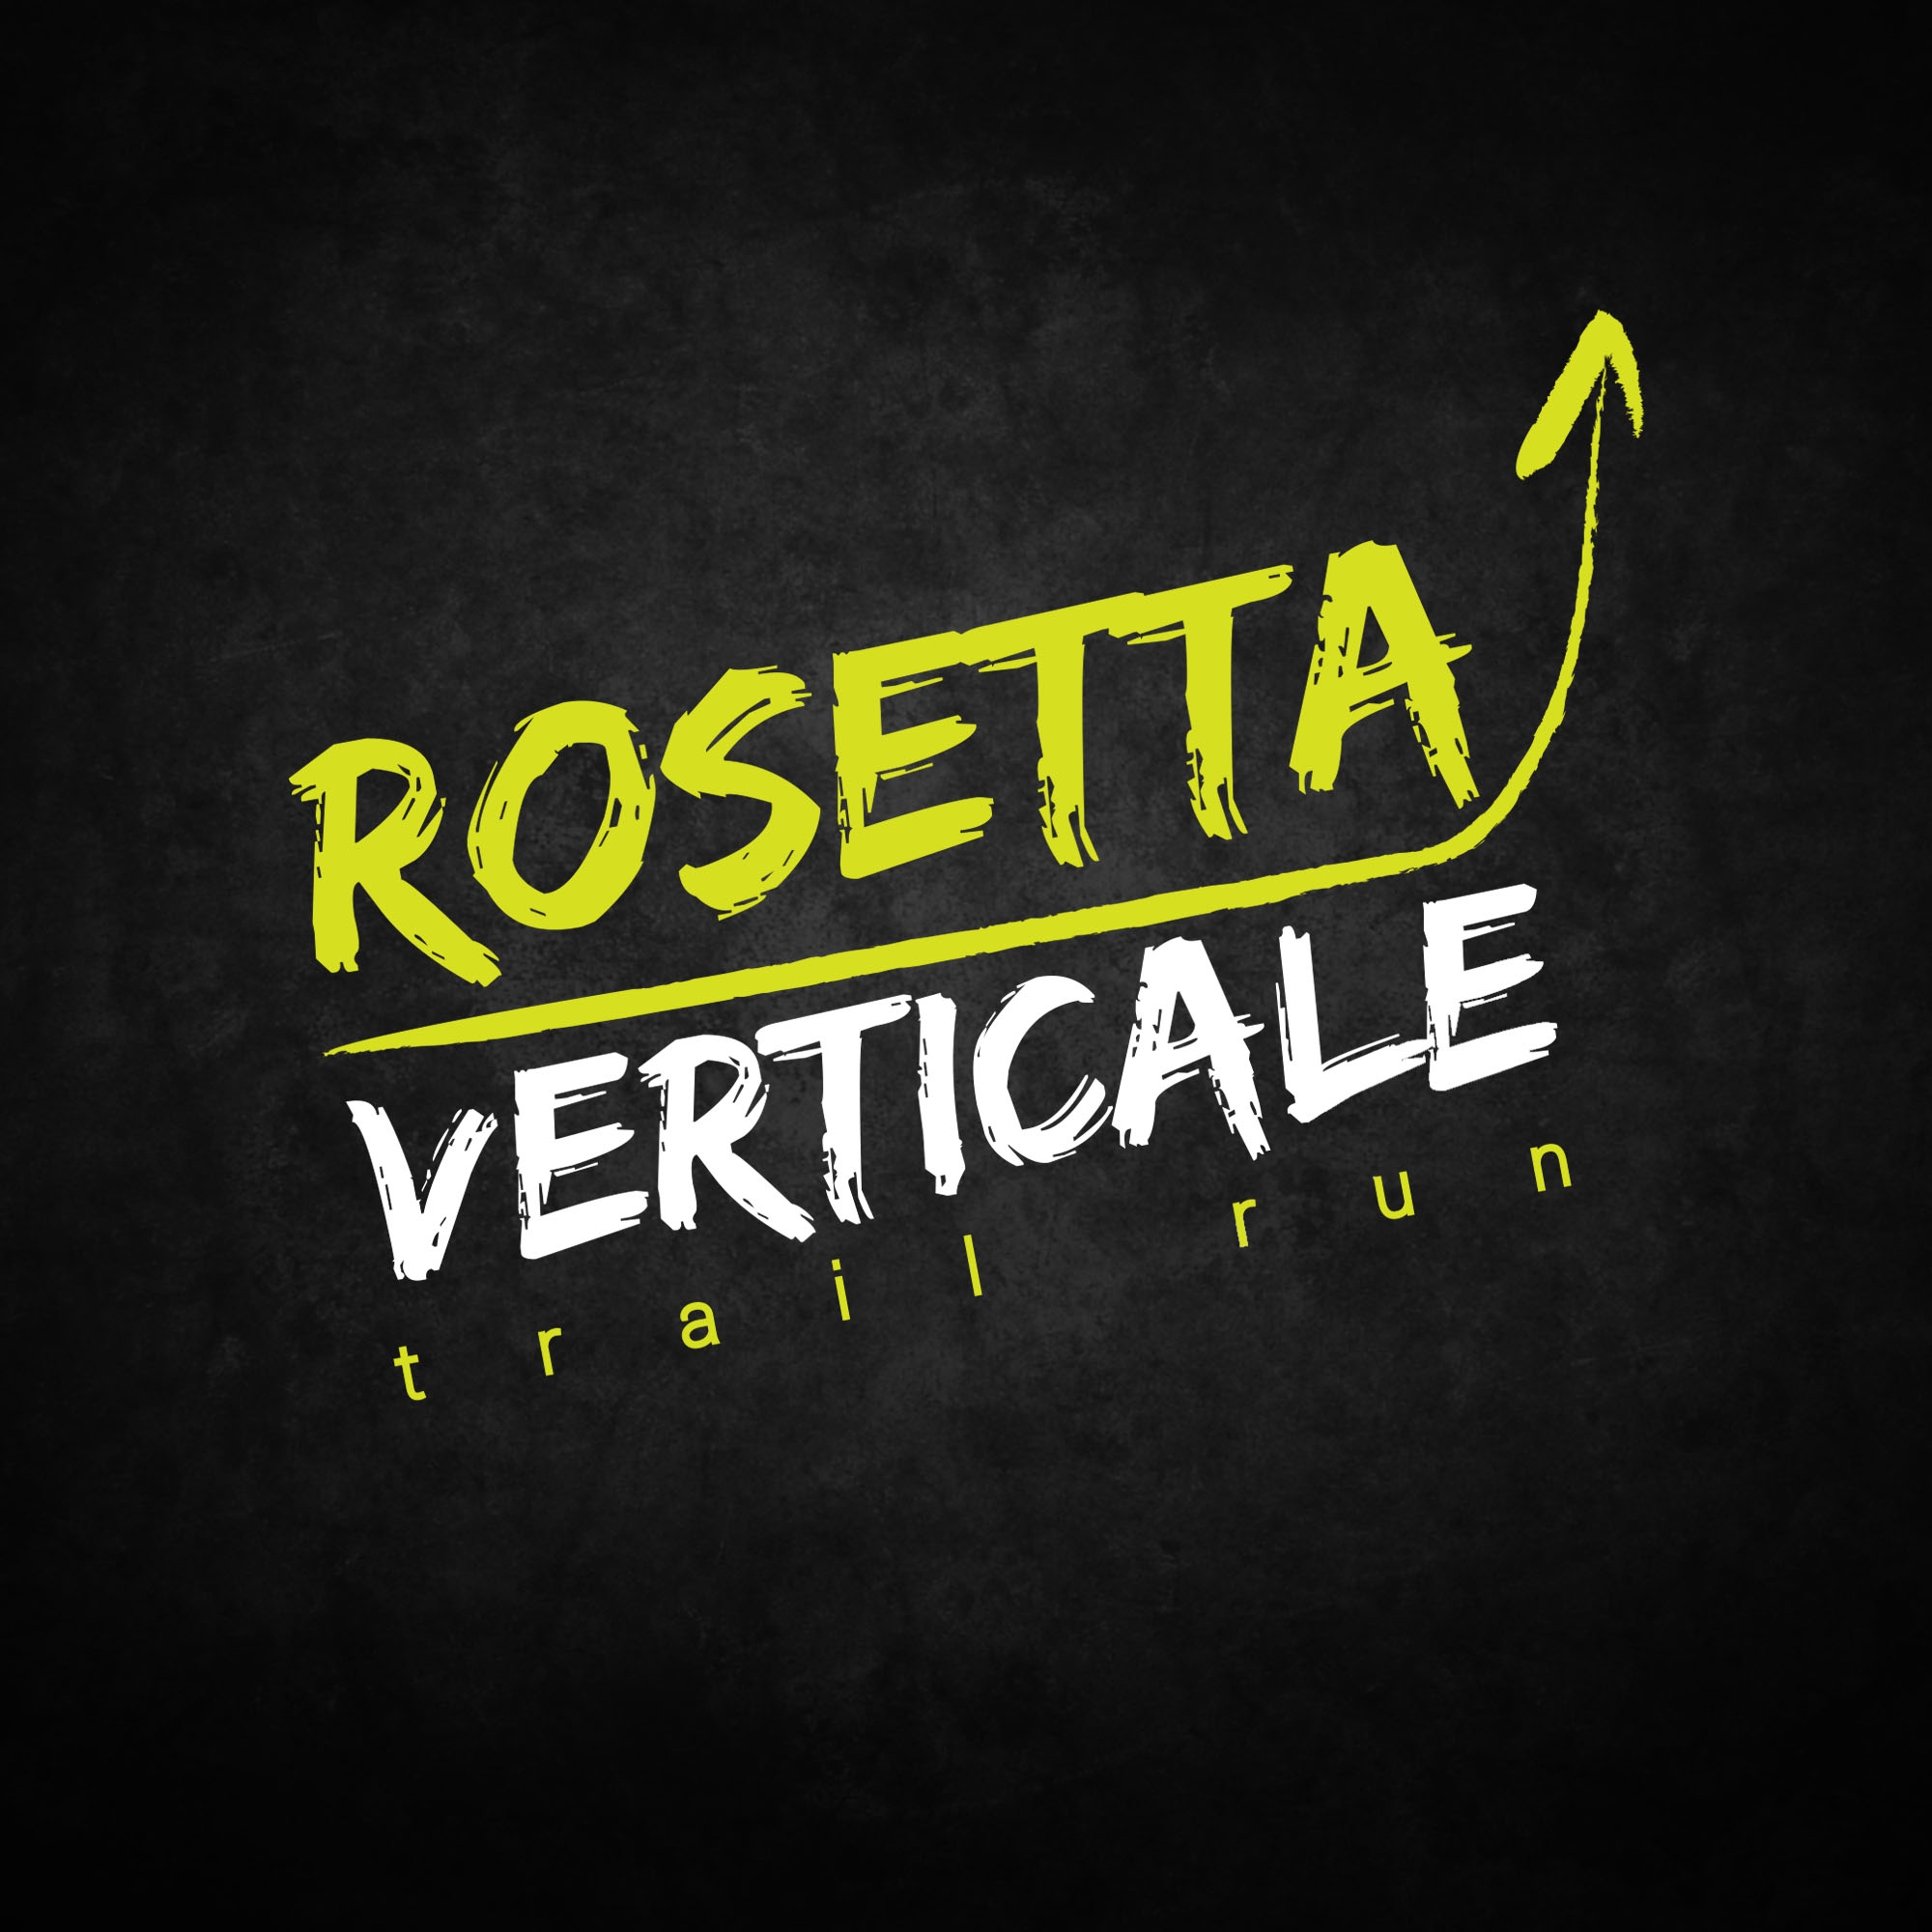 Rosetta Verticale Trail Run V edizione